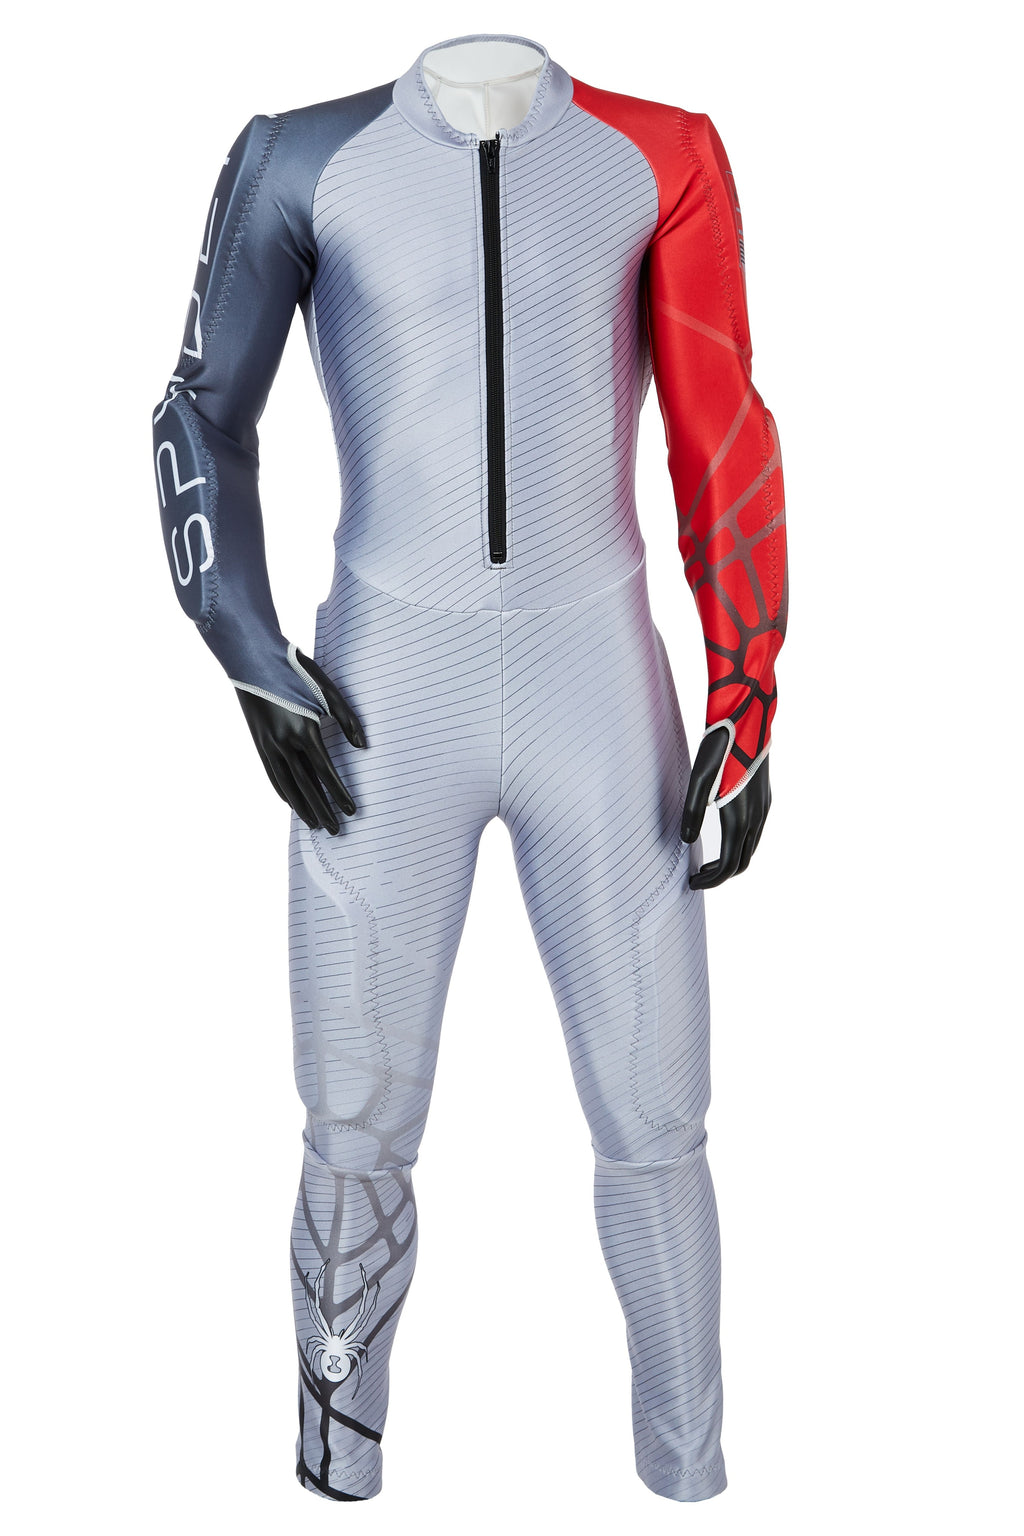 Костюмы спайдер. Гоночный костюм Spyder Performance GS. Гоночный костюм Spyder Performance GS Race Suit. Спусковой комбинезон Spyder. Гоночный костюм Spyder Nine Ninety.